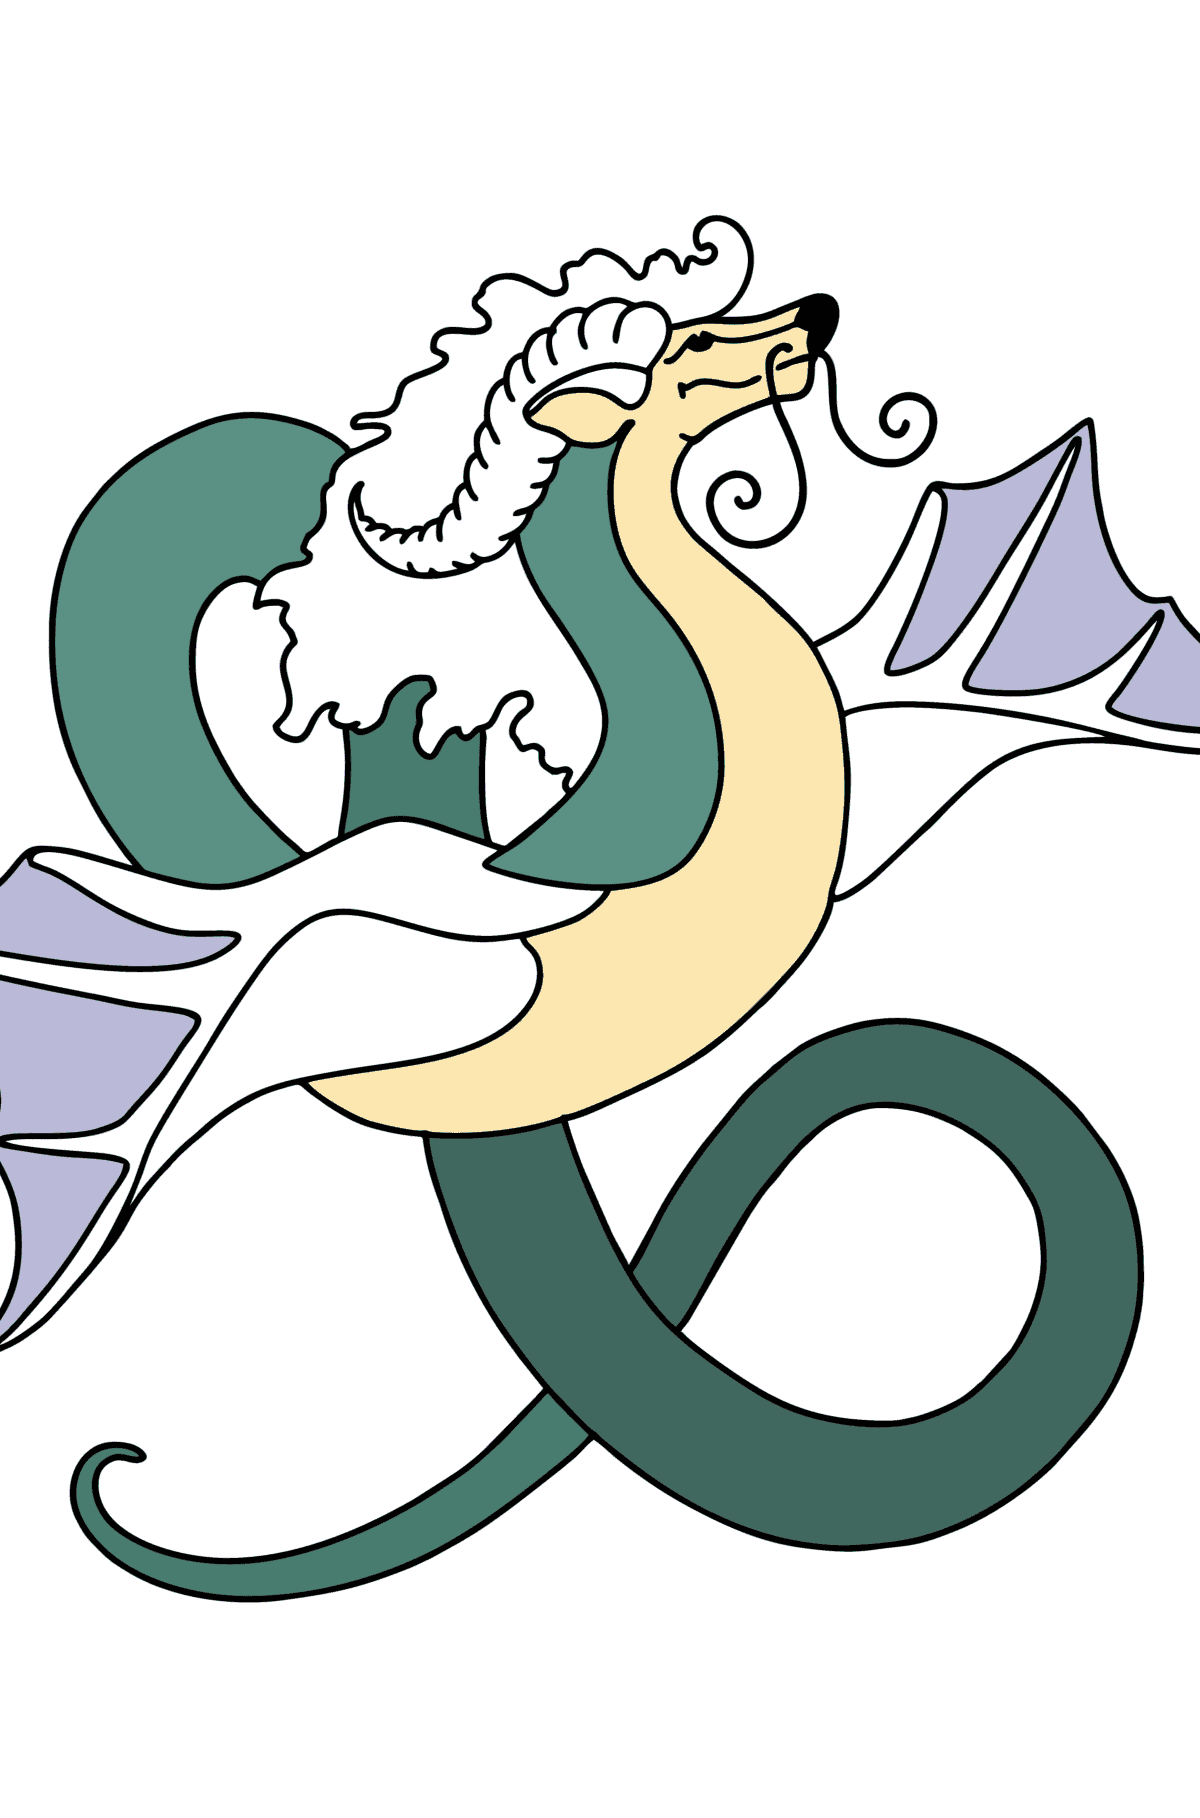 Desen de colorat Dragon zburator - Desene de colorat pentru copii